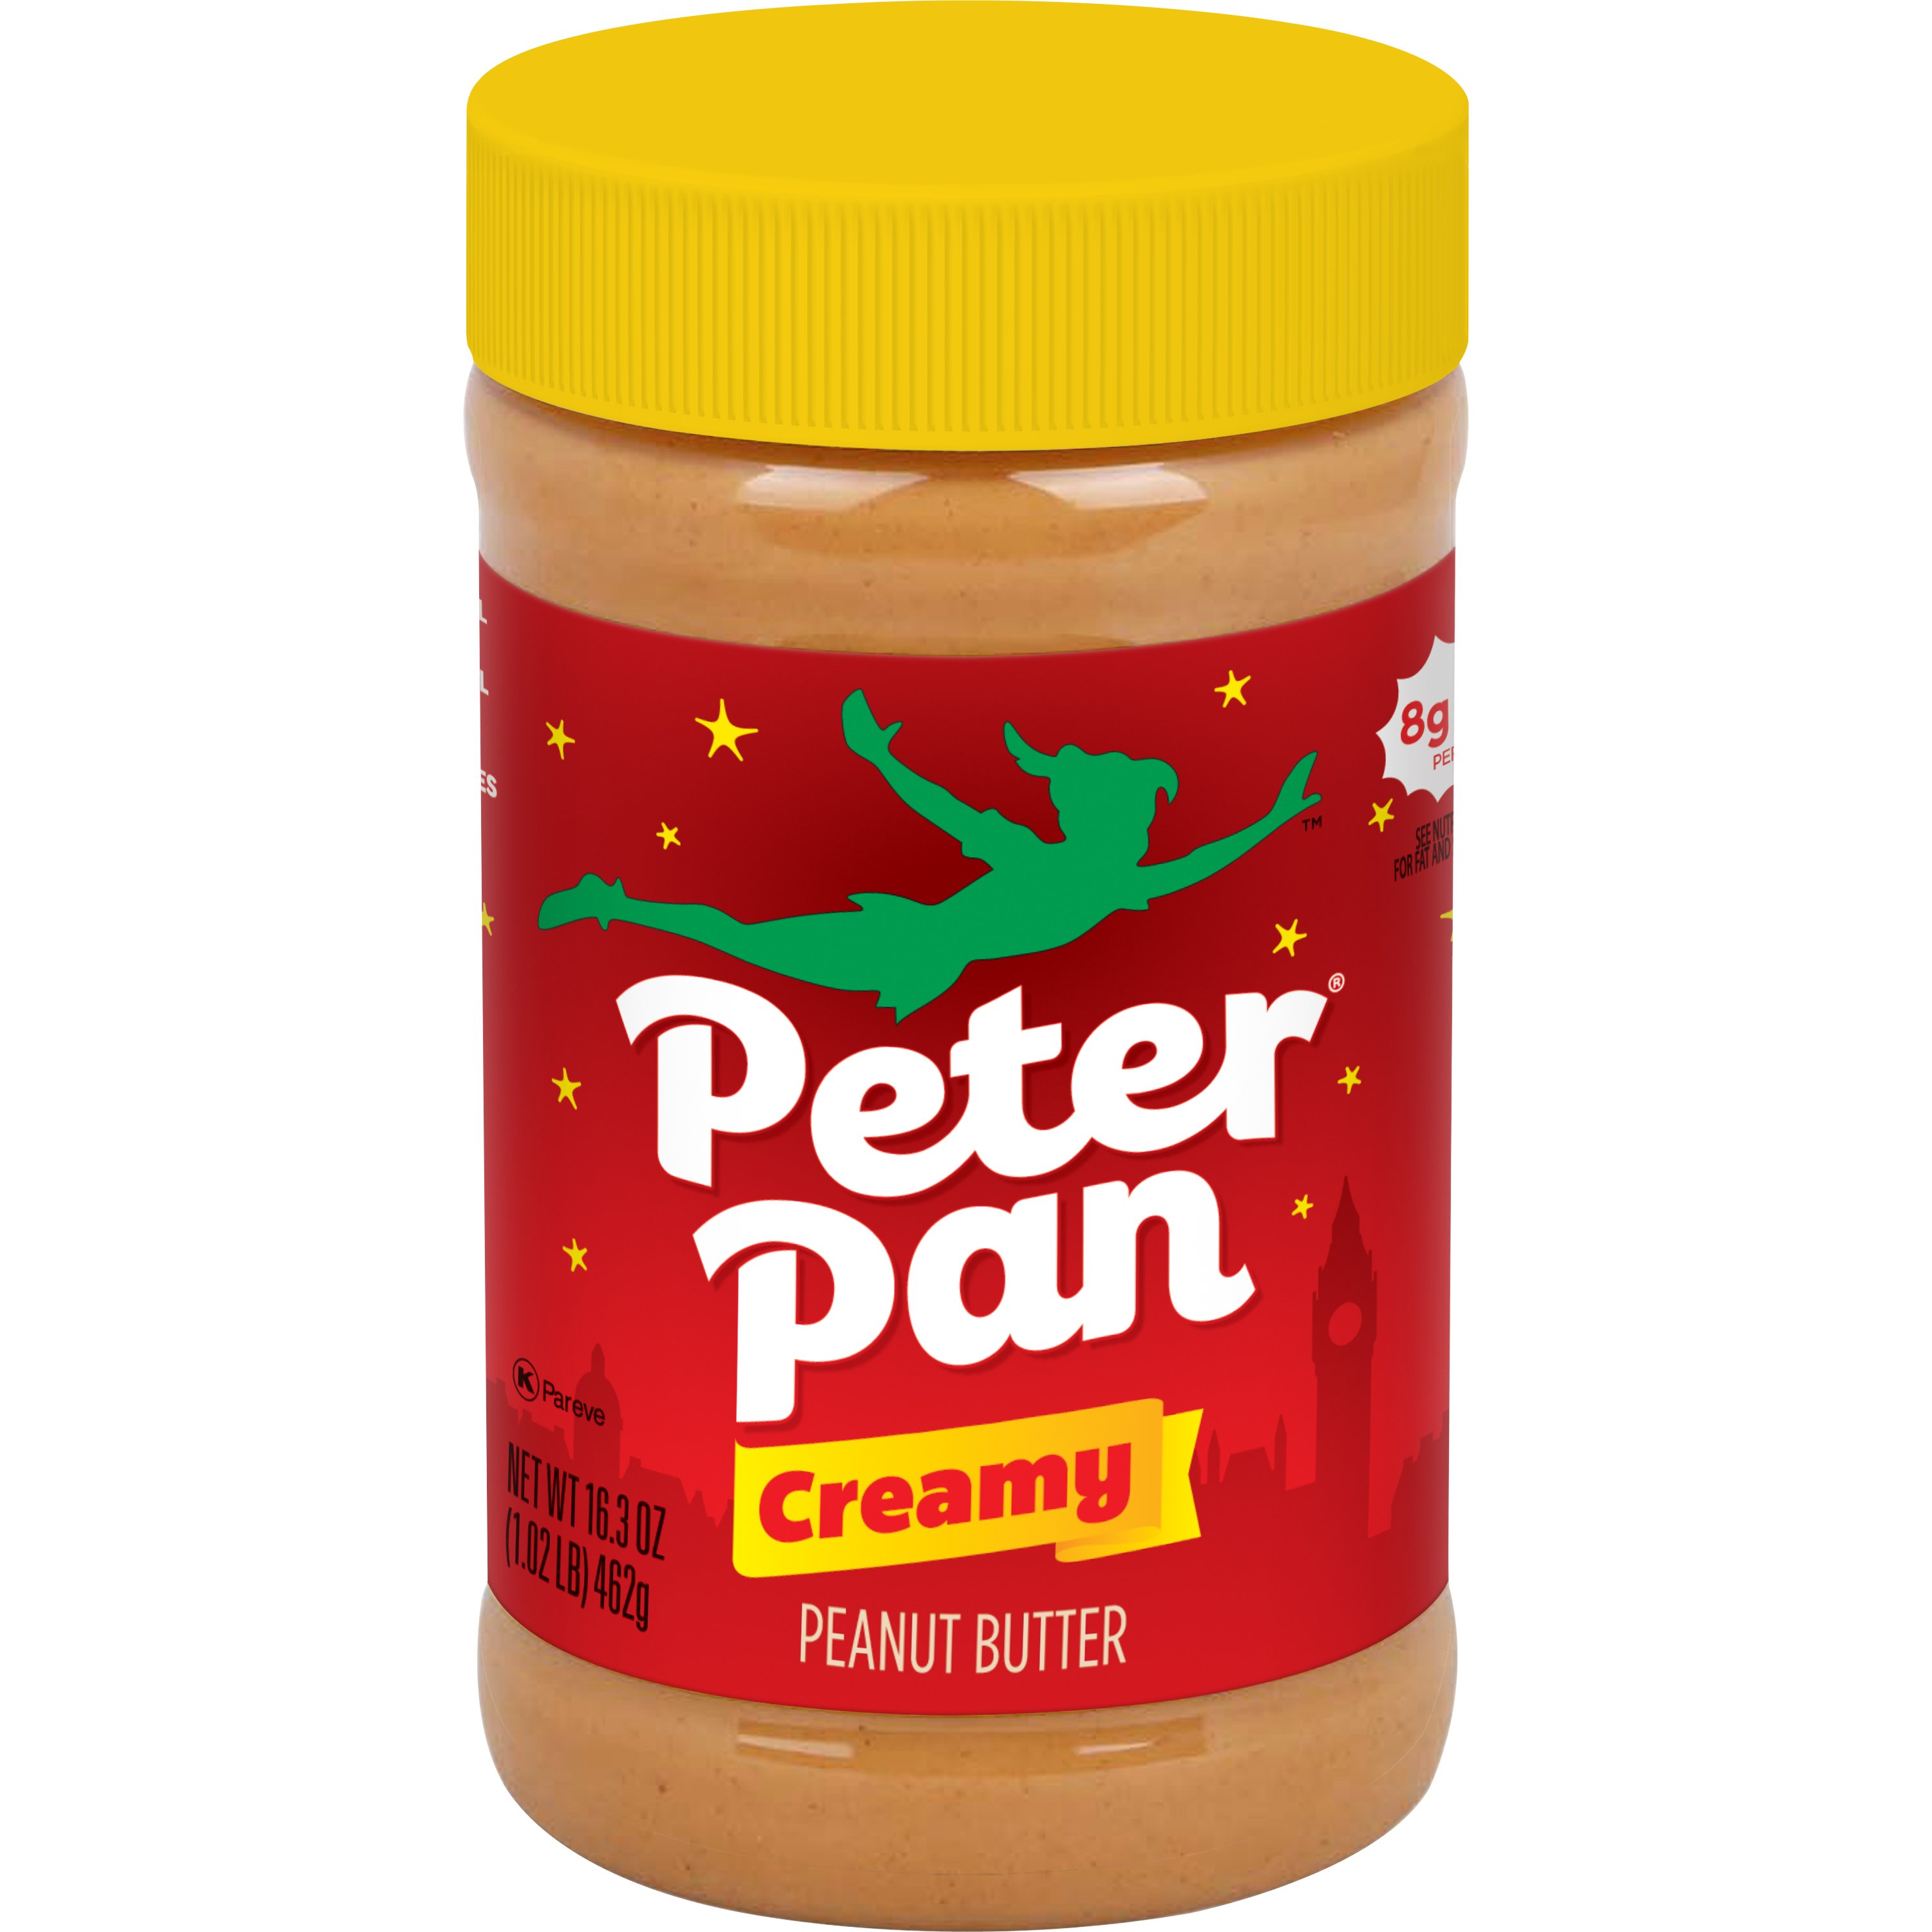 Peter Pan Creamy Peanut Butter - Shop Peanut Butter at H-E-B